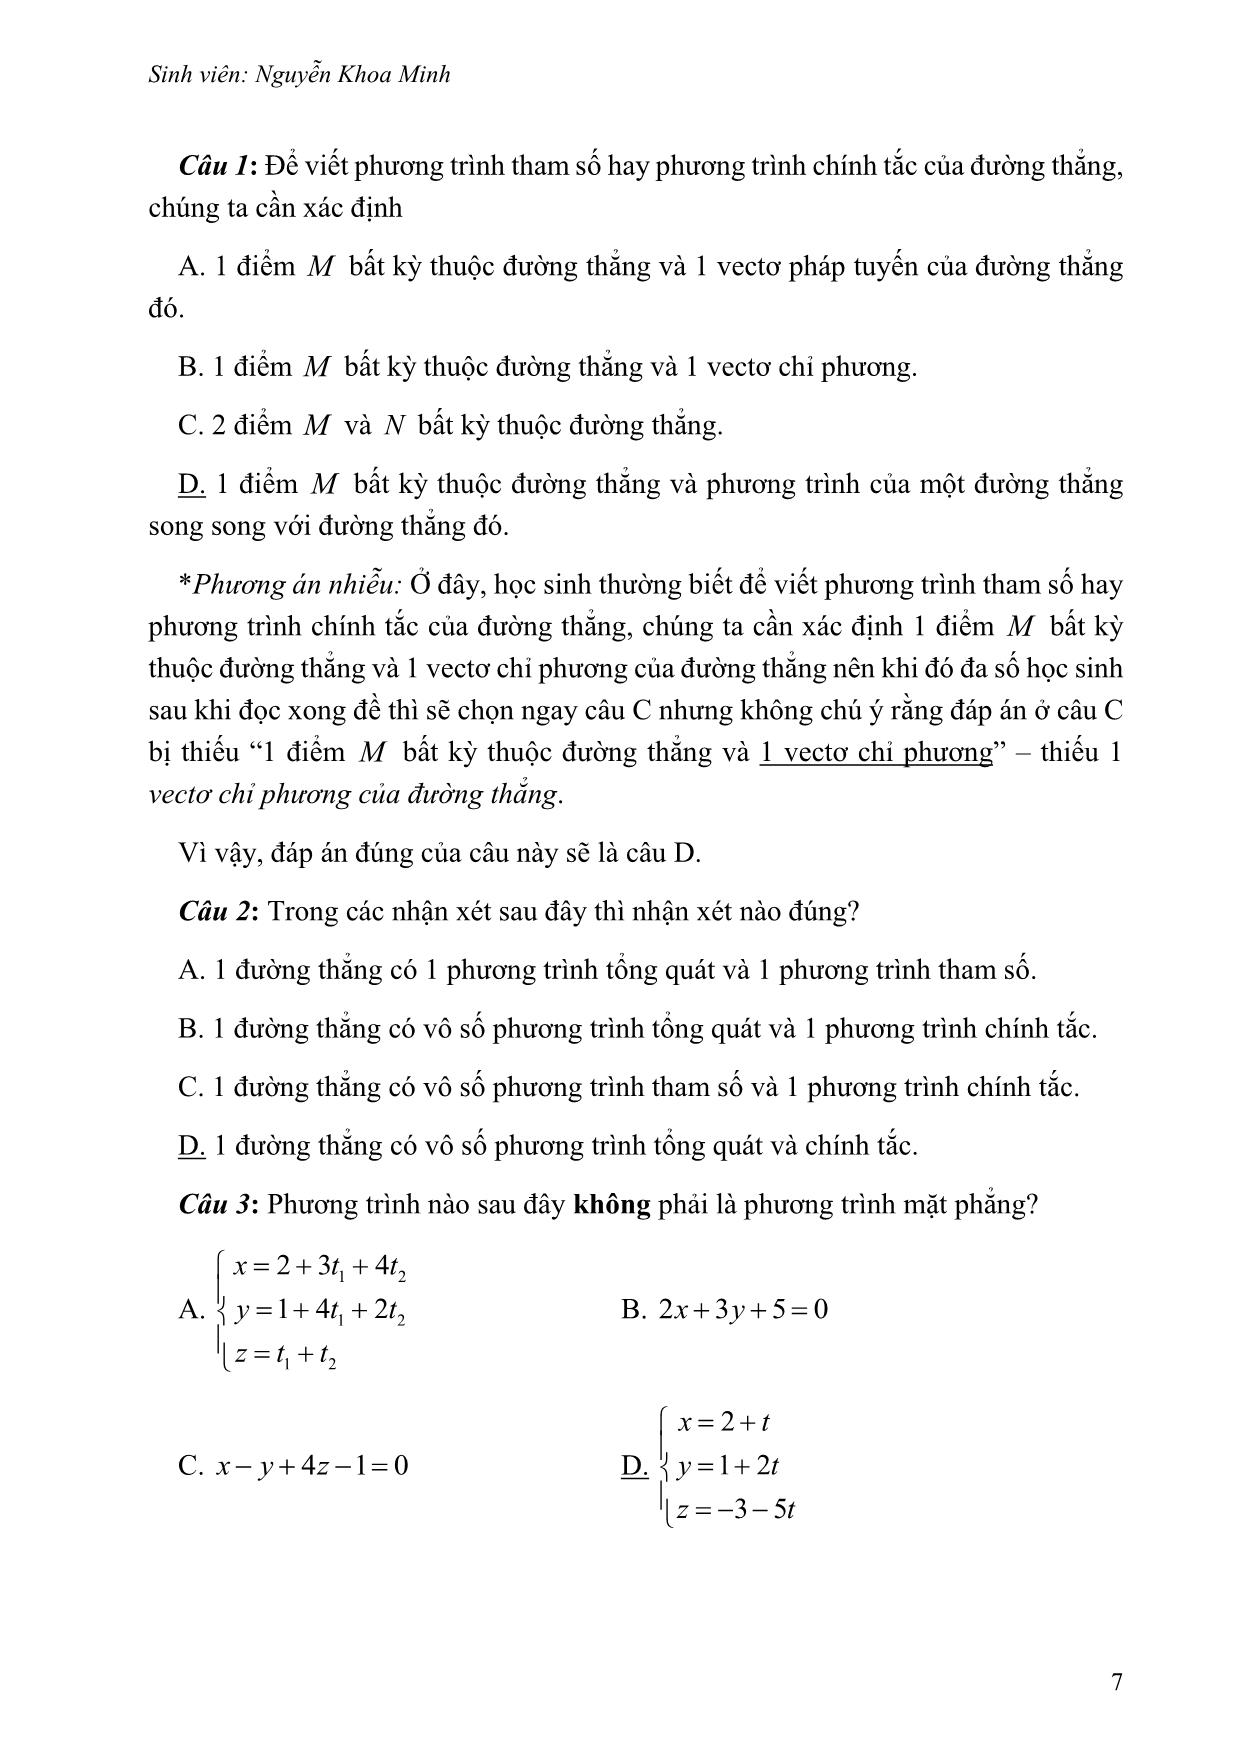 Cách viết câu hỏi trắc nghiệm khách quan từ câu hỏi truyền thống - Chủ đề: Phương trình đường thẳng trong không gian trang 8